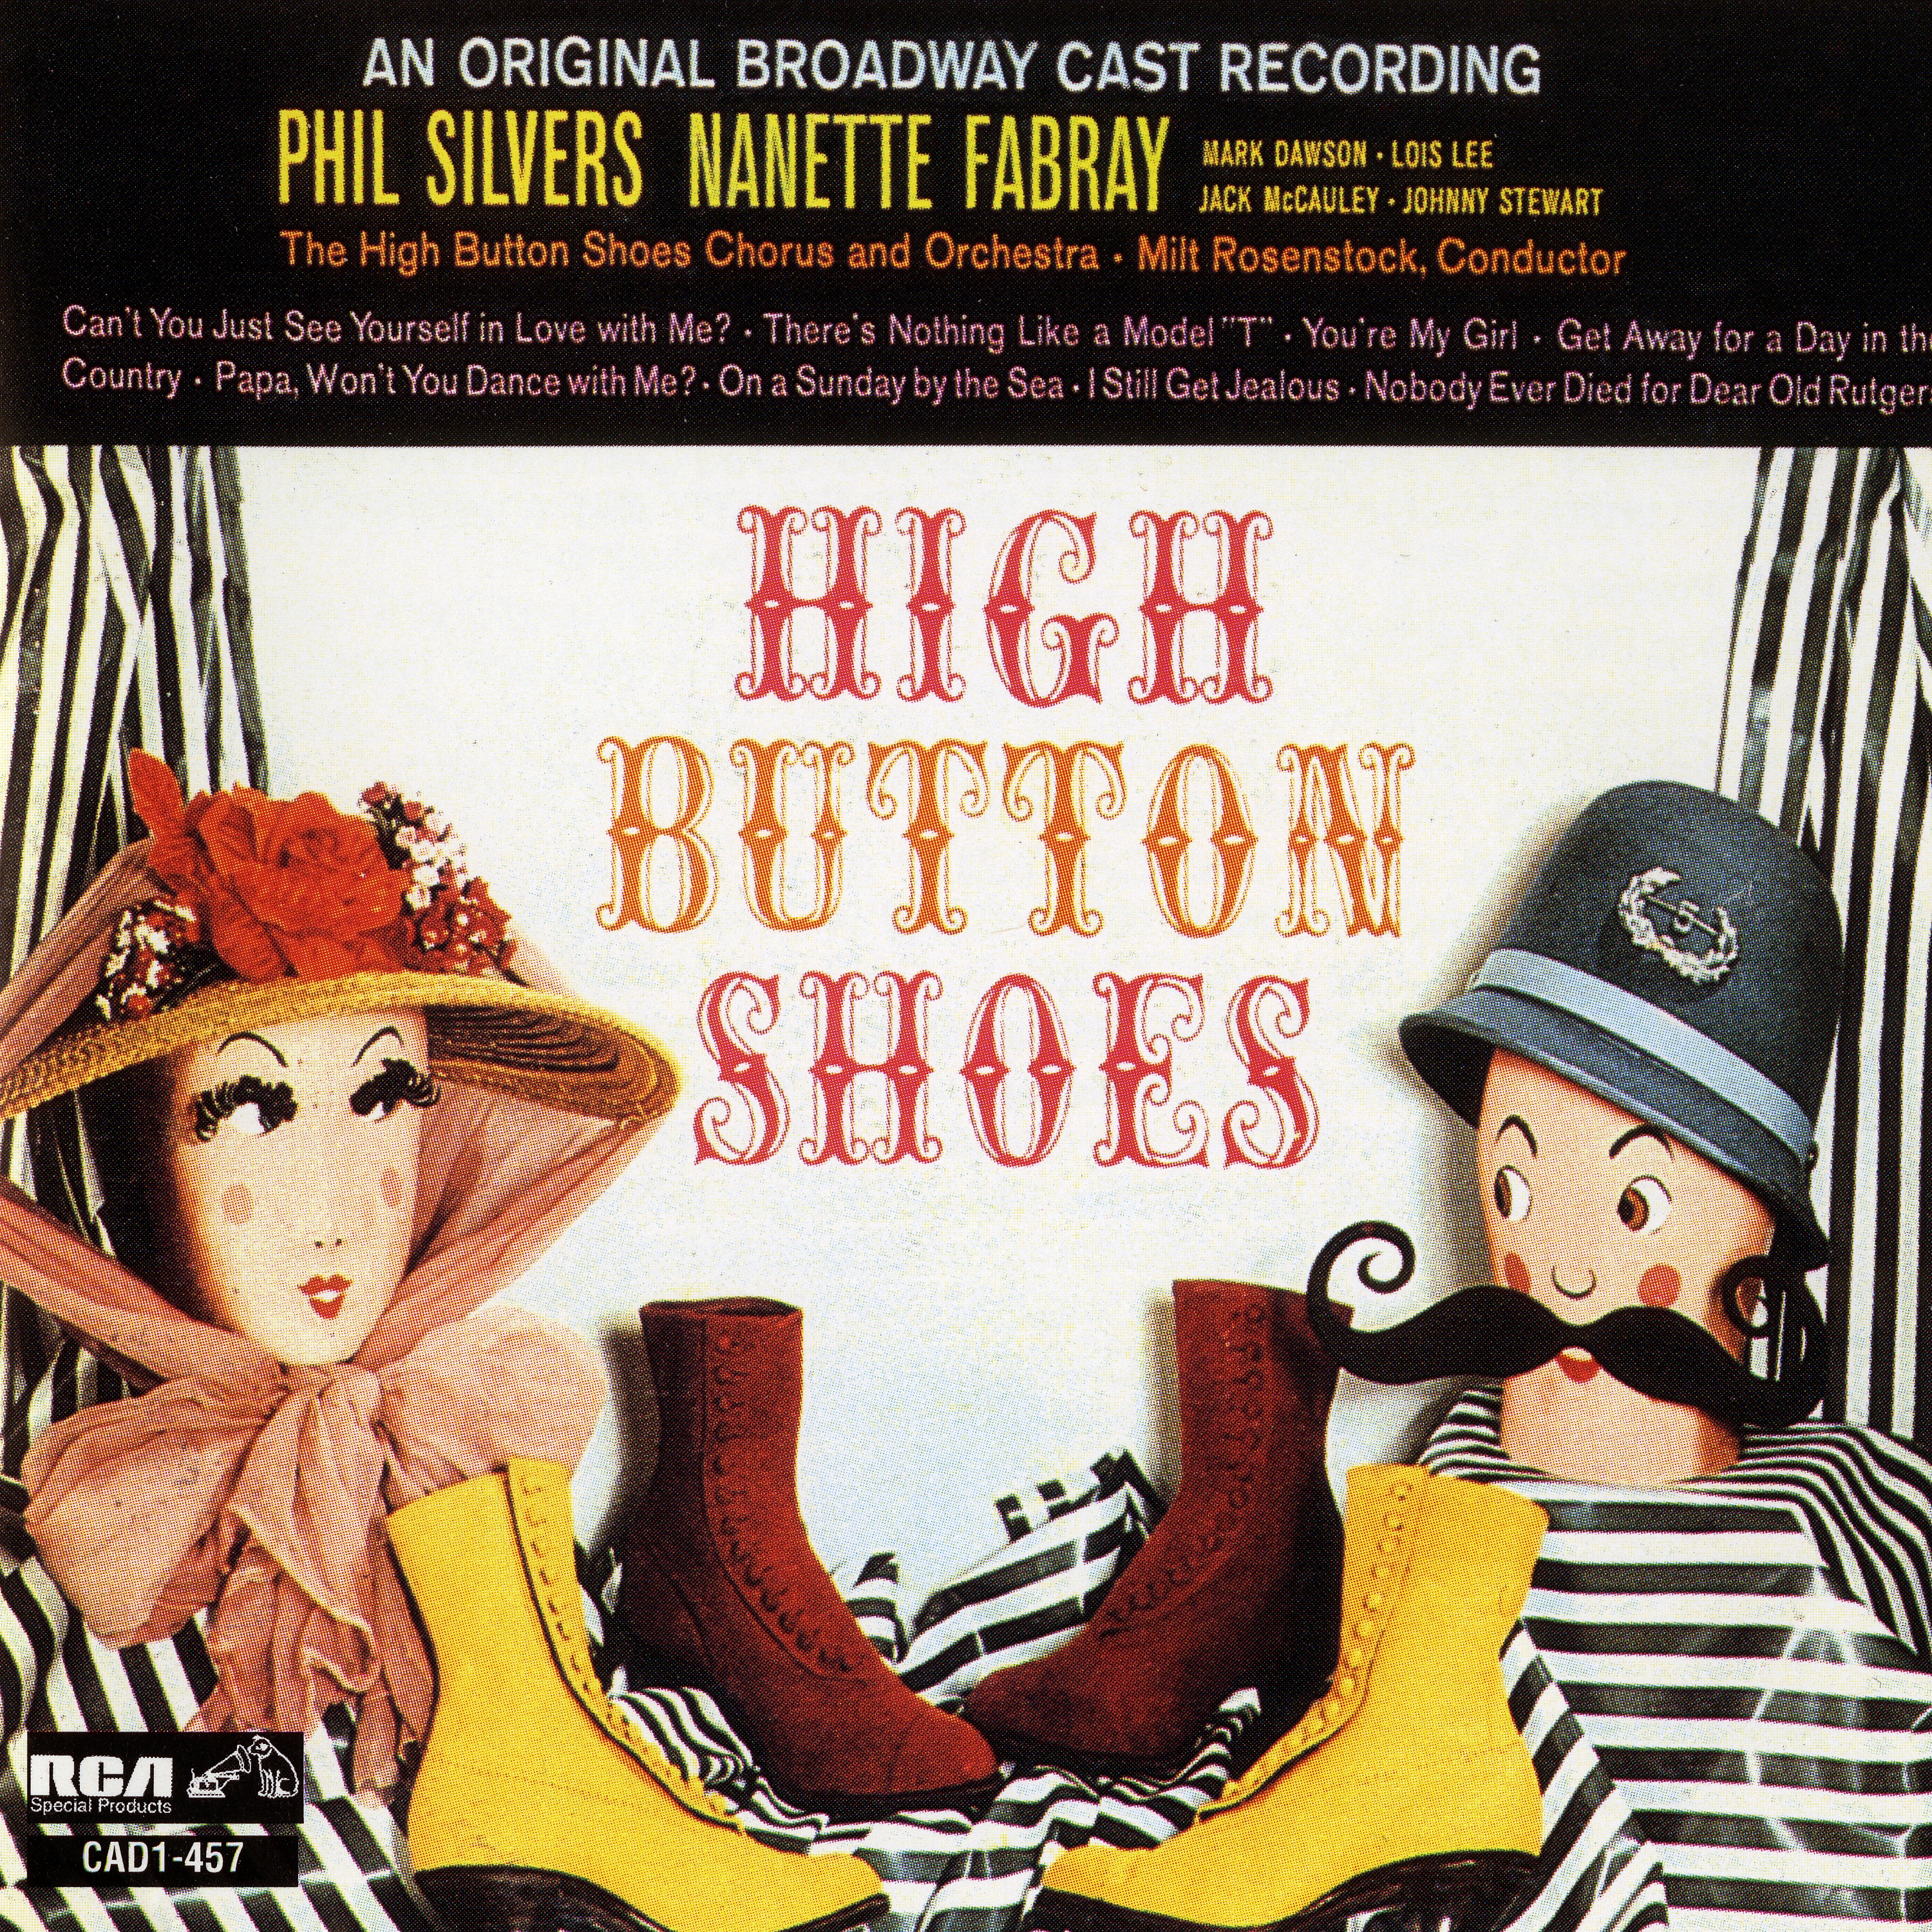 Original broadway. Chicago Original Broadway Cast. High-button Shoes. Where's the girl Original Broadway Cast перевод.